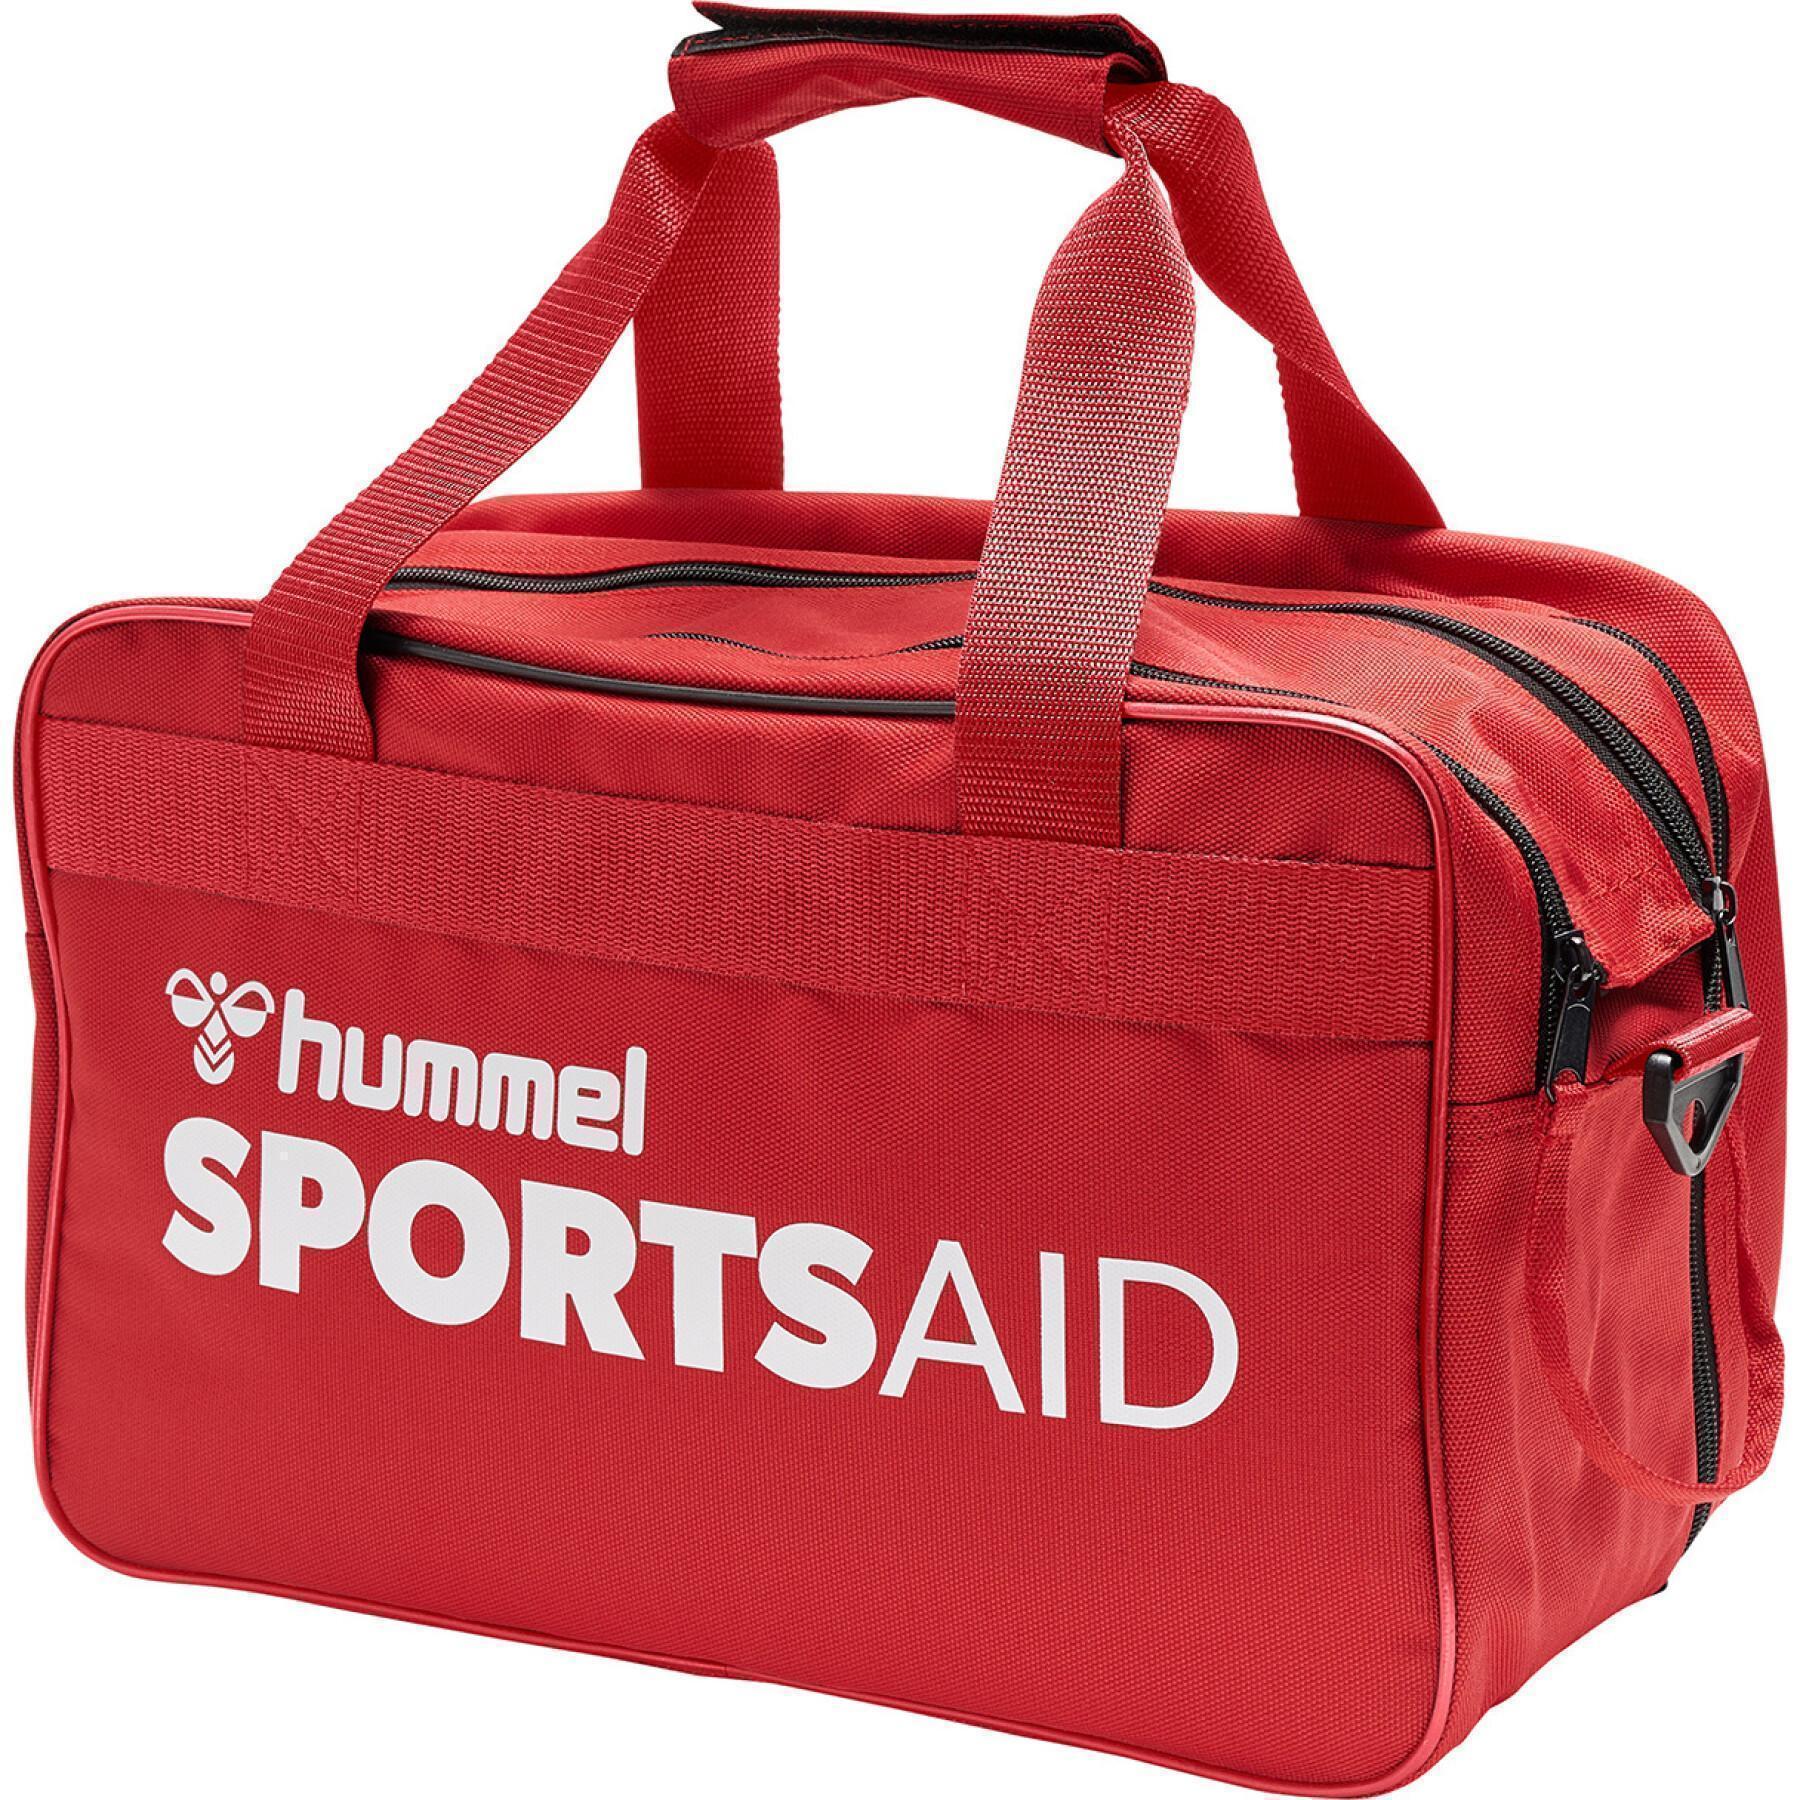 First aid bag Hummel - - Care Club